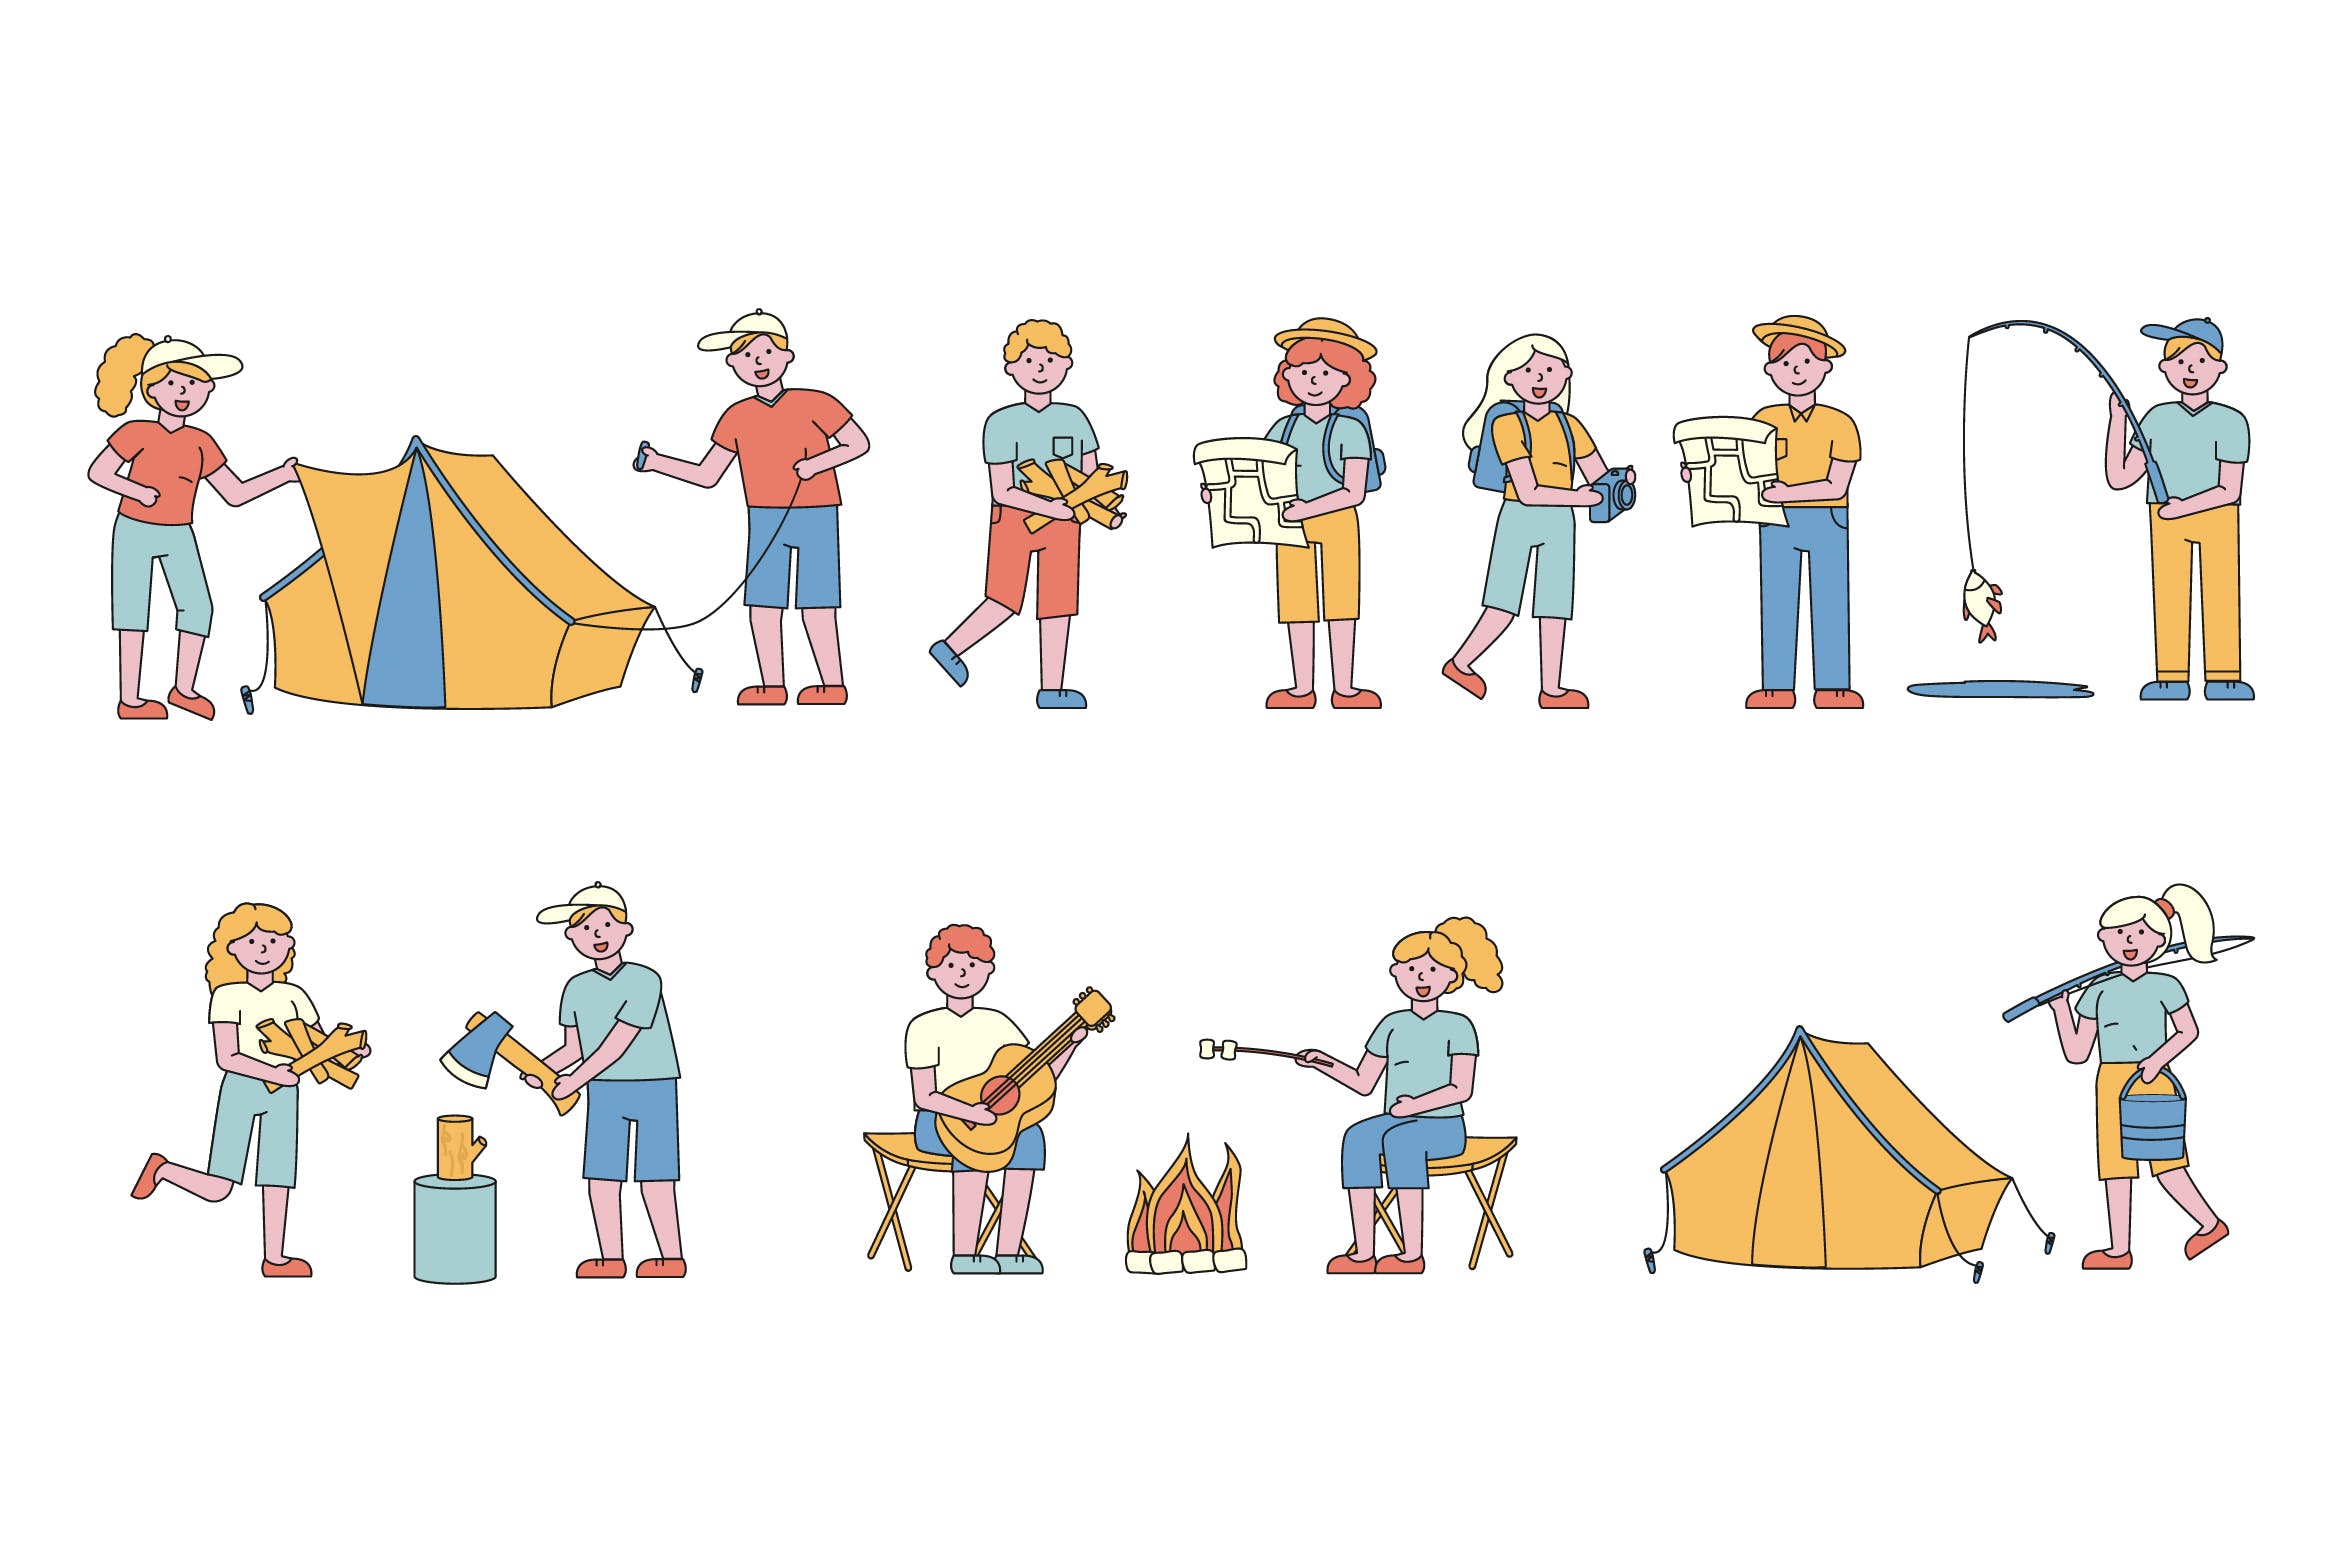 野营户外运动主题人物形象线条艺术矢量插画素材库精选素材 Campers Lineart People Character Collection插图